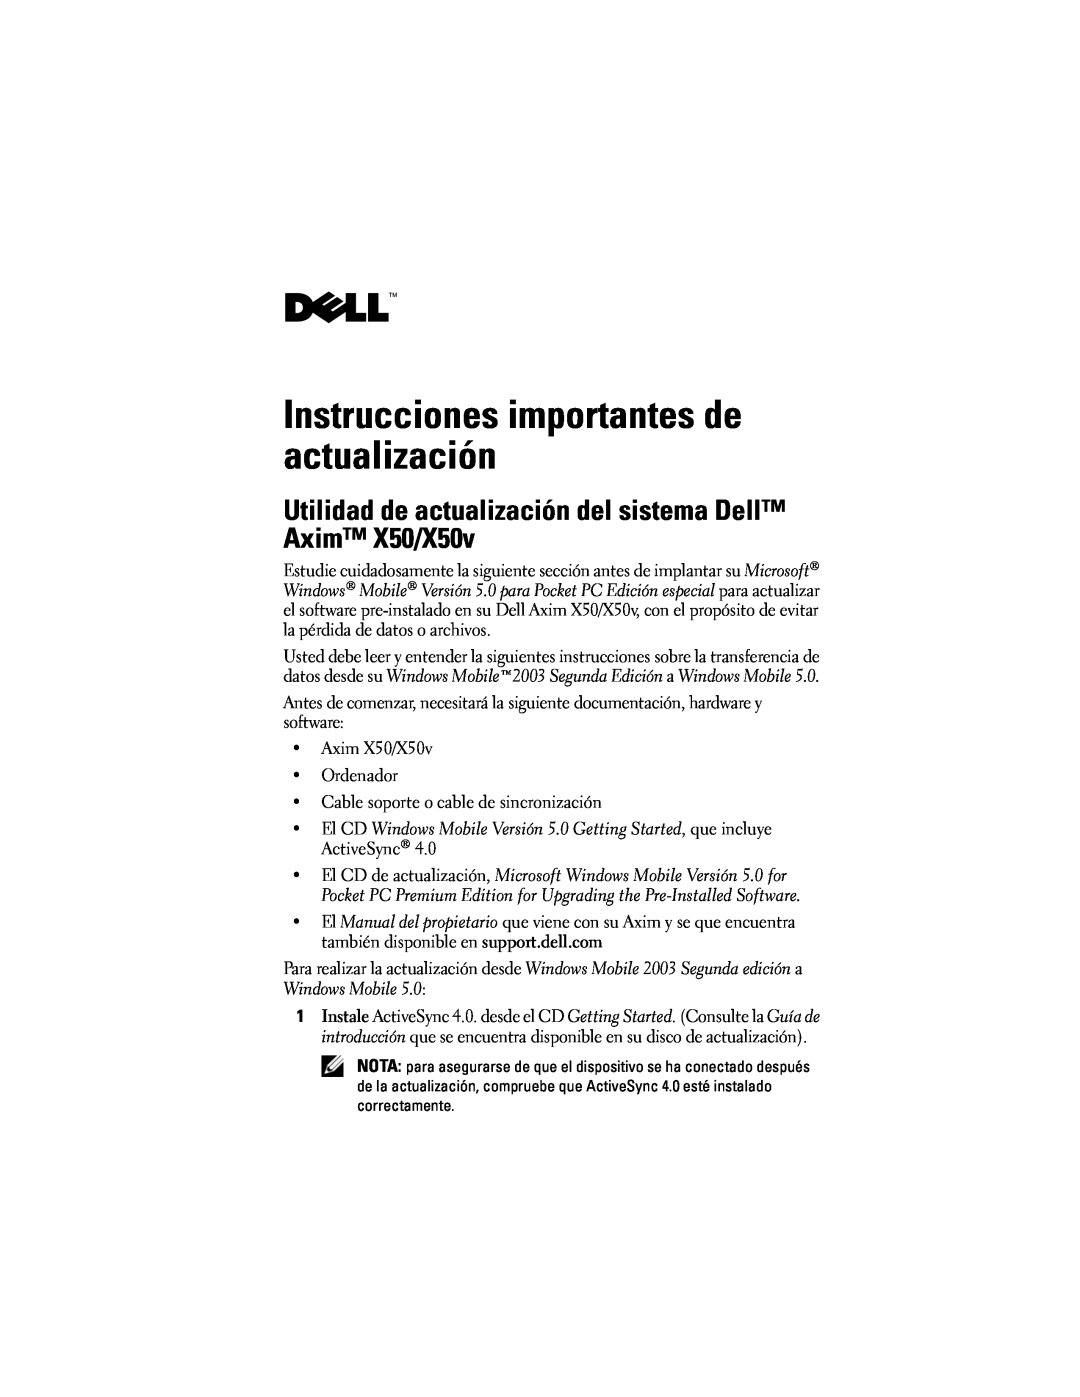 Dell owner manual Instrucciones importantes de actualización, Utilidad de actualización del sistema Dell Axim X50/X50v 